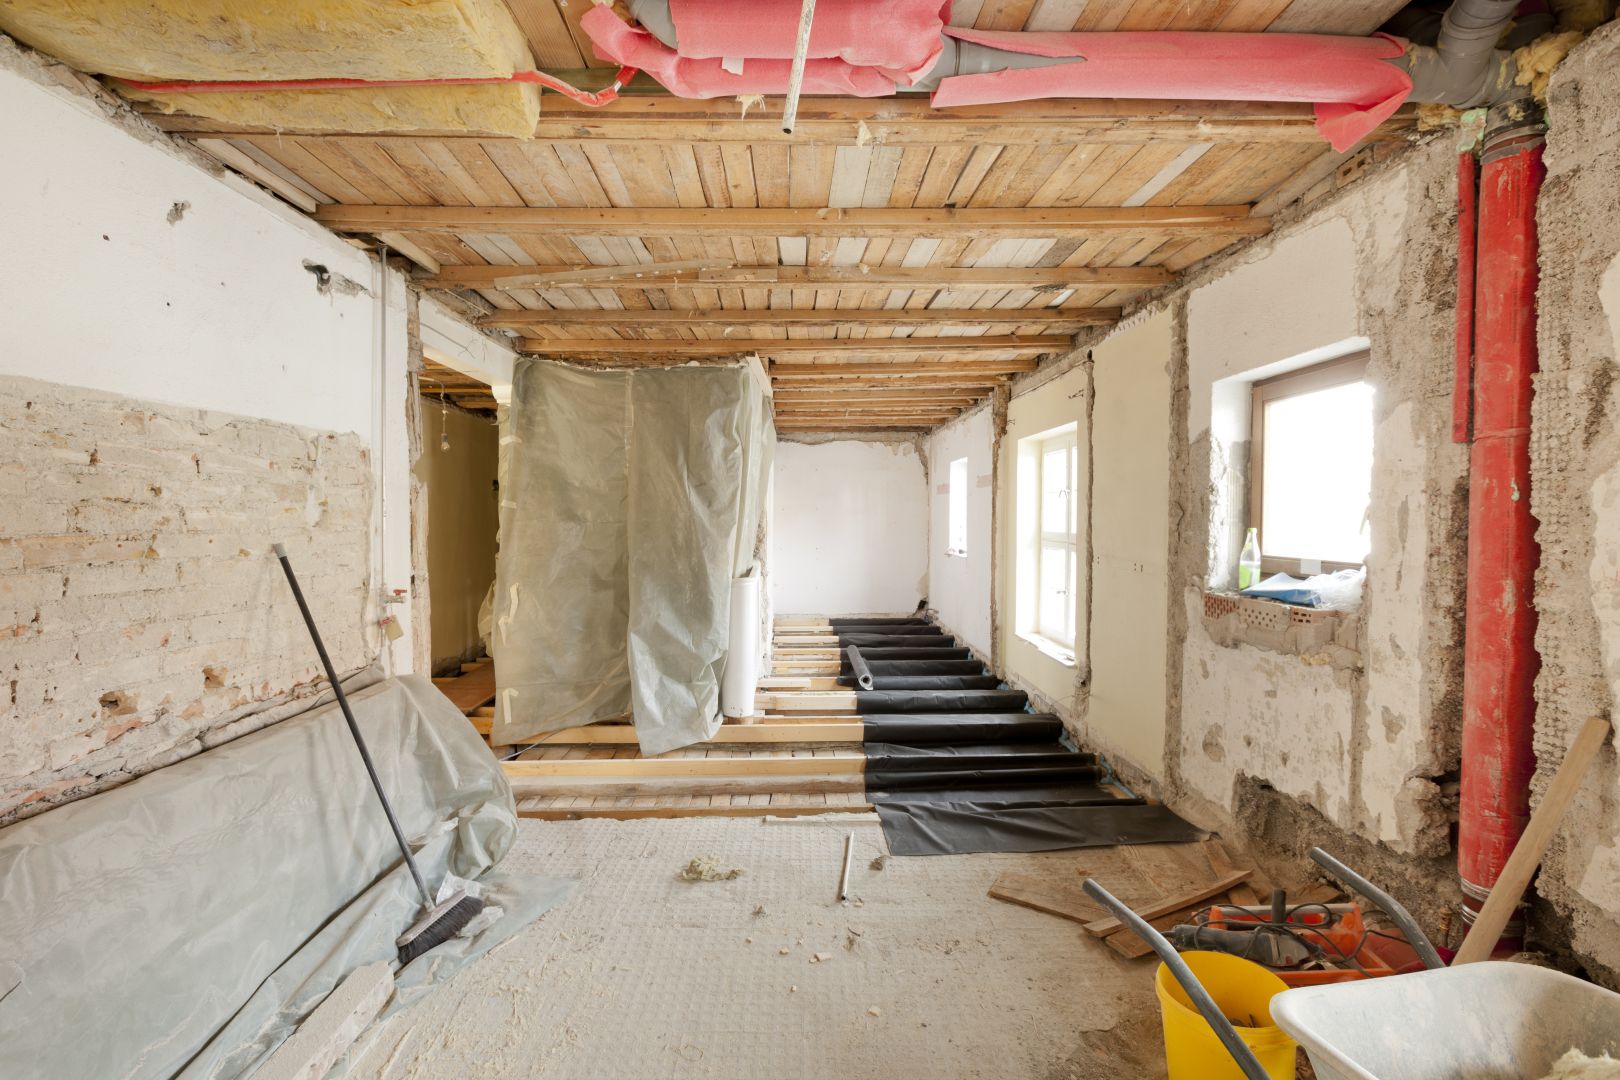 Poptávka na menší rekonstrukci v domě (Projektanti - rekonstrukce) - Mělník